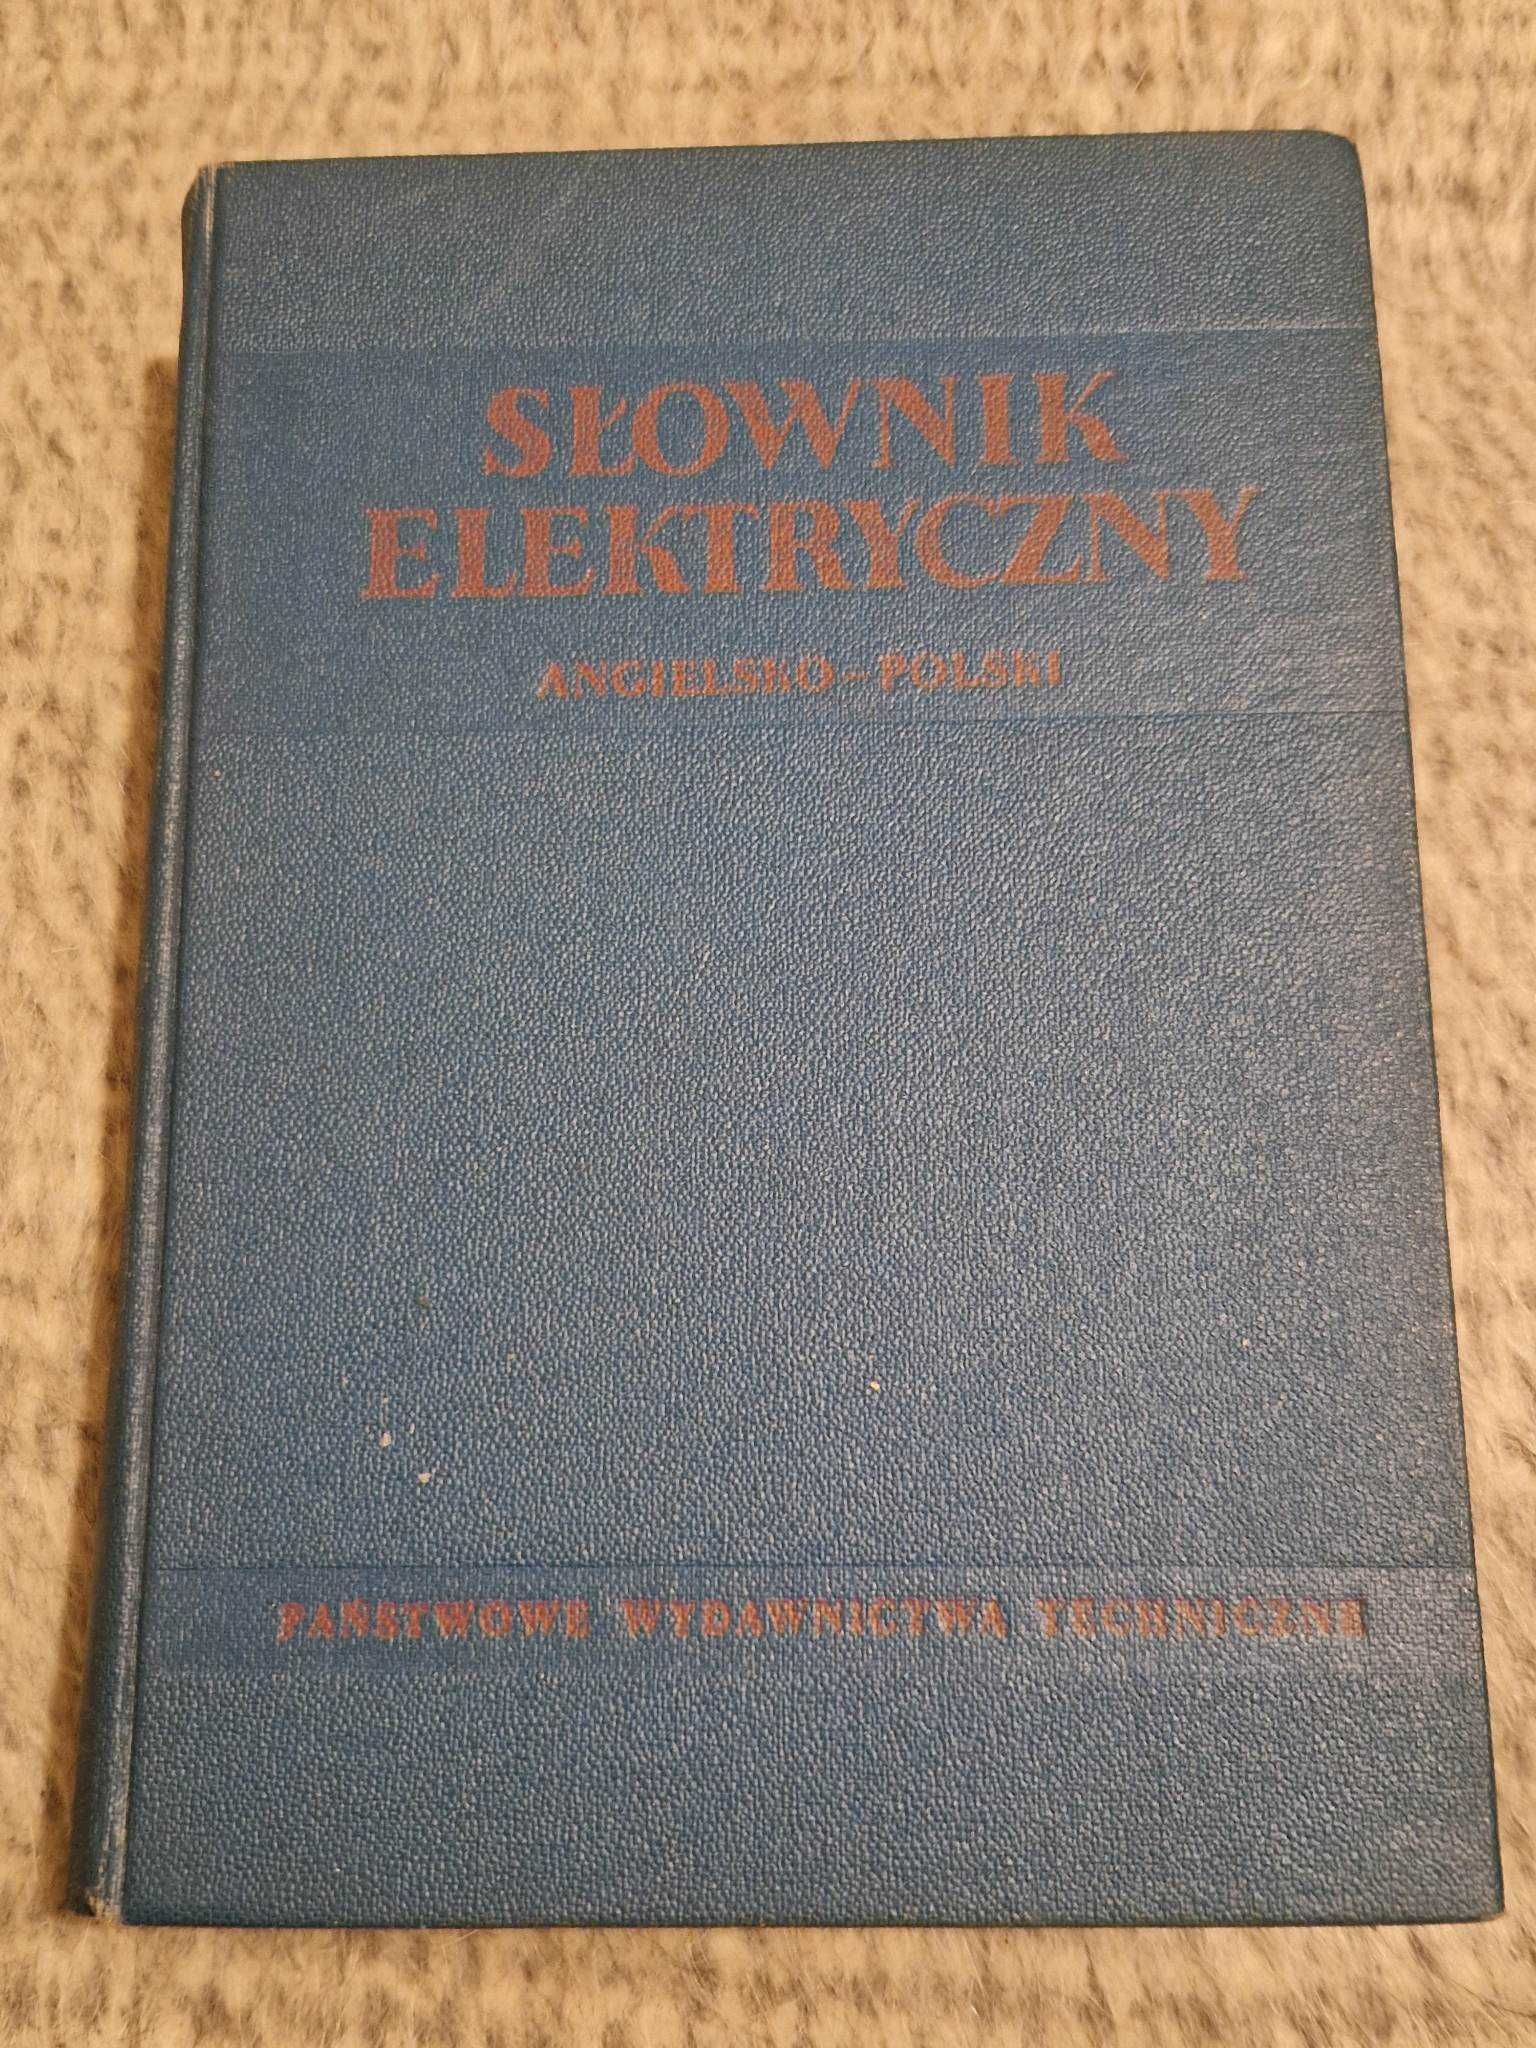 Słownik elektryczny angielsko-polski